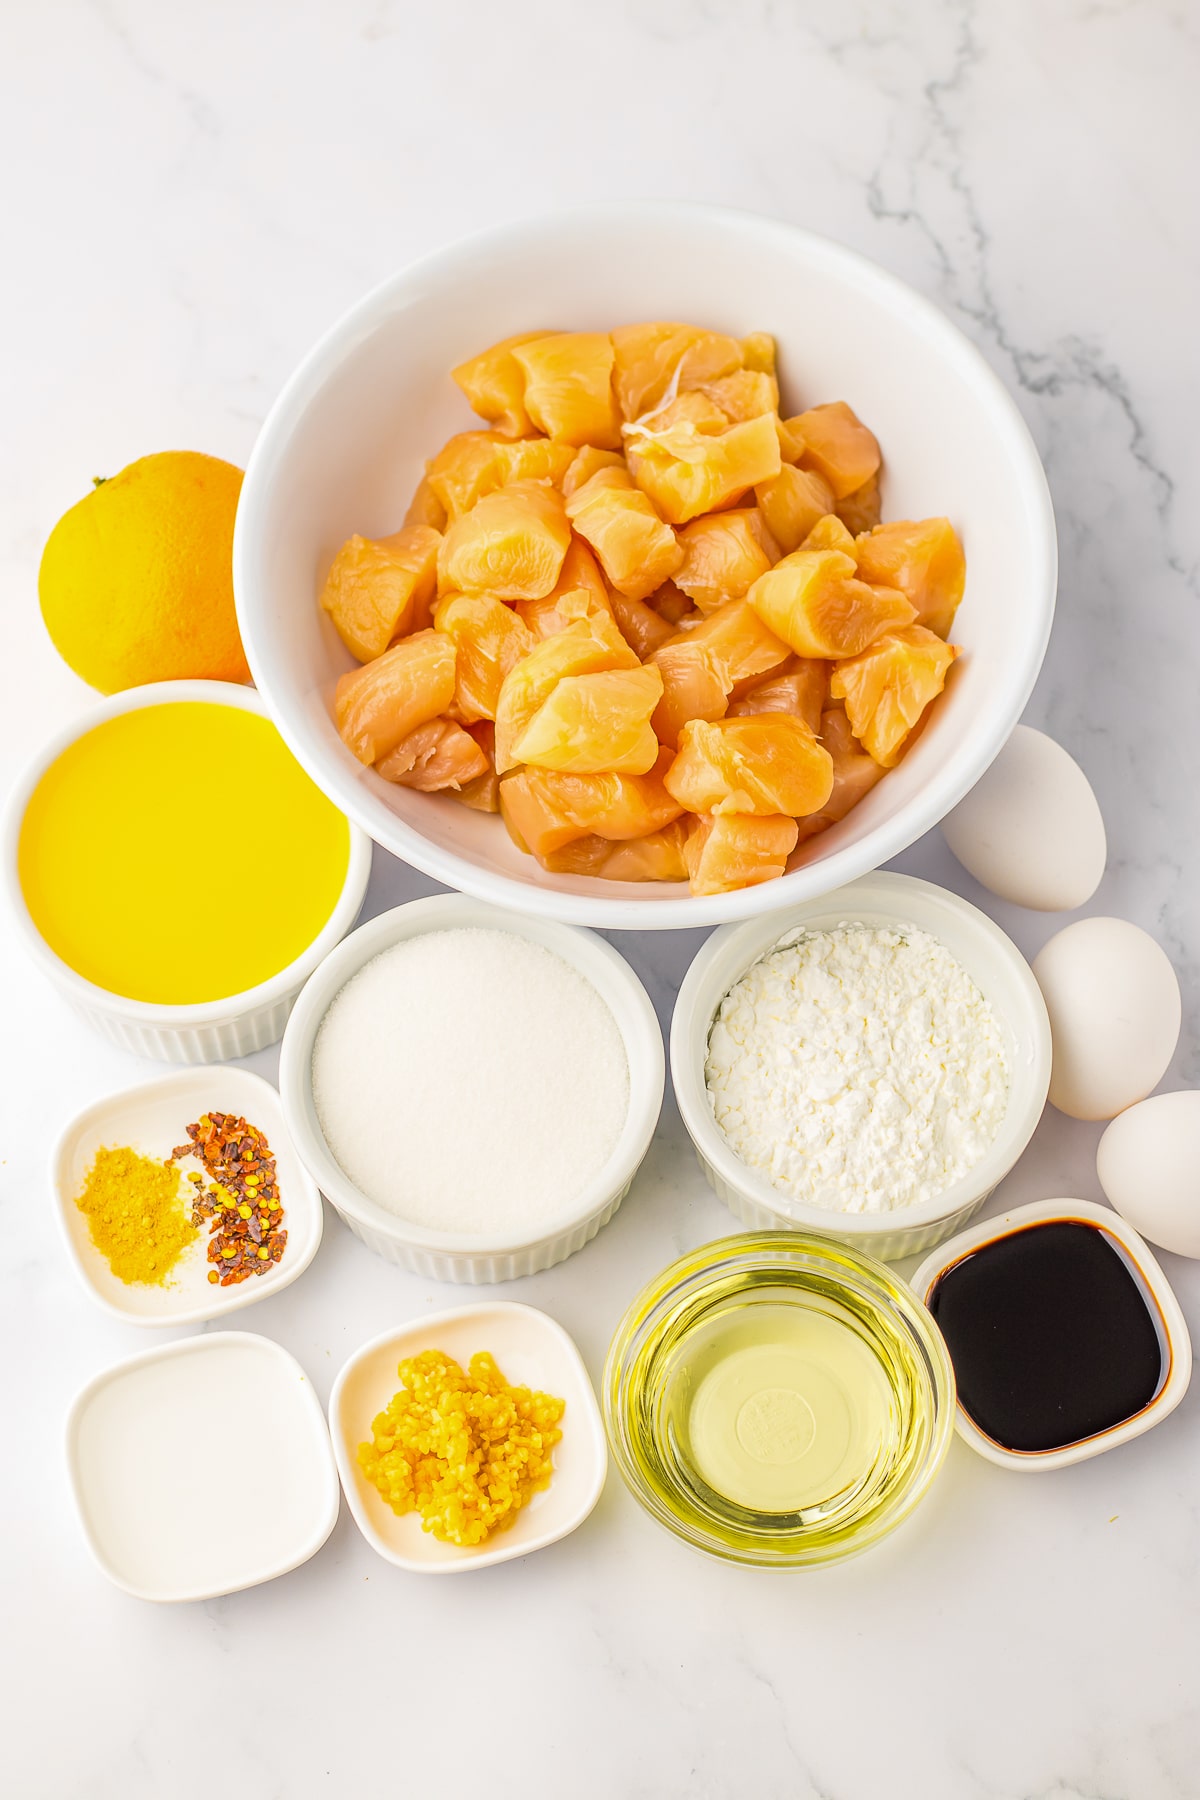 ingredients needed for basic orange chicken recipe